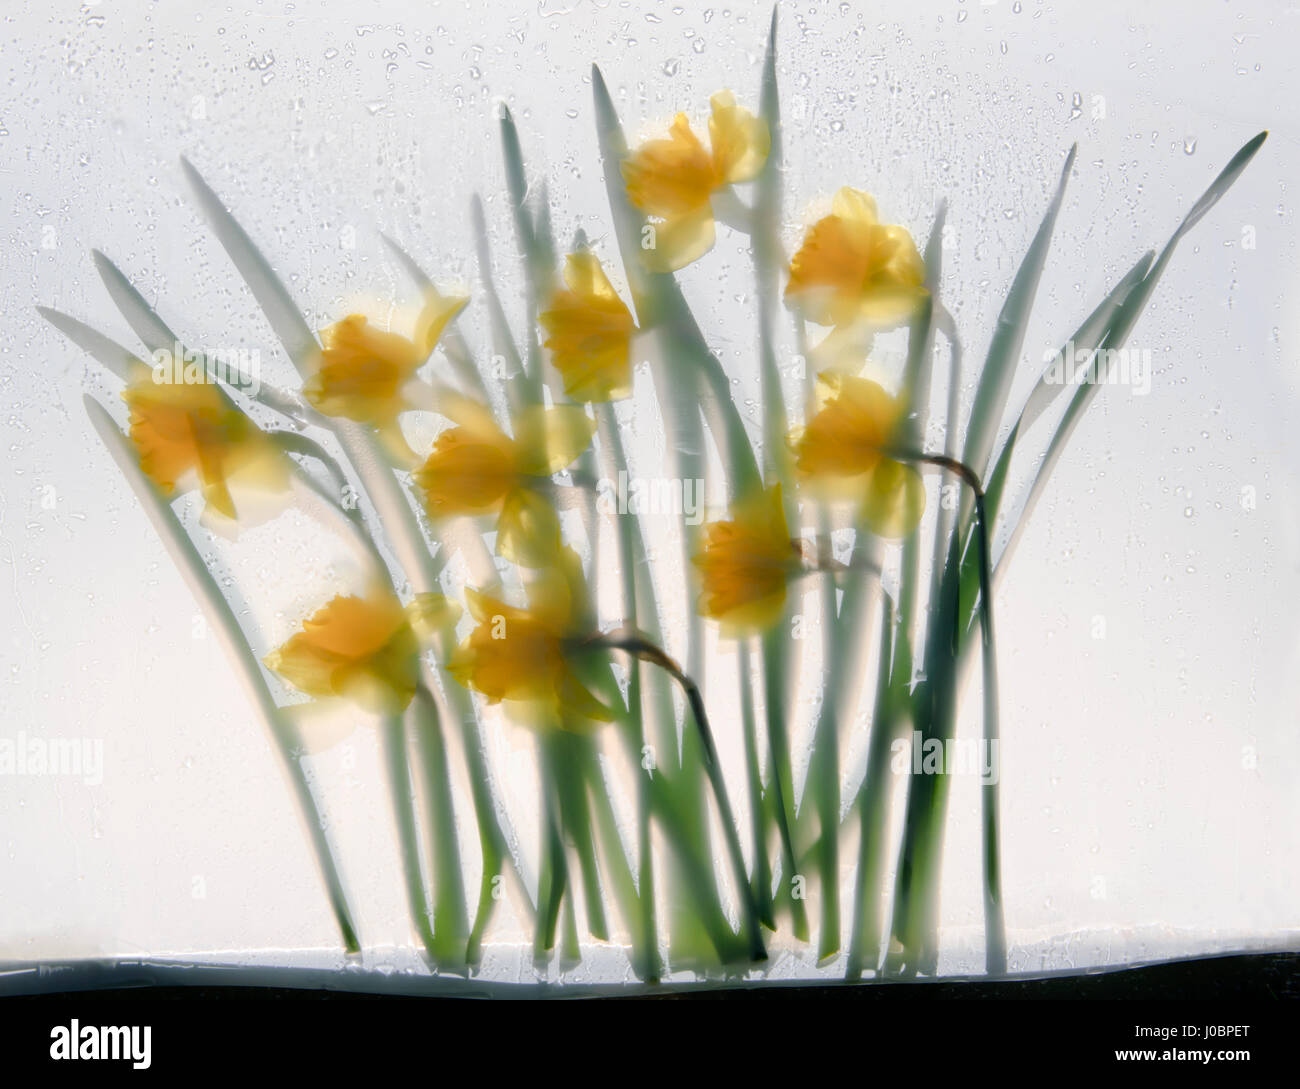 Gelbe Narzisse Blumen und Blättern, zwischen Glas und Ingenieurbaus Film in einer feuchten Atmosphäre, Hintergrundbeleuchtung von gefleckte Sonnenlicht und Schatten gedrückt. Stockfoto